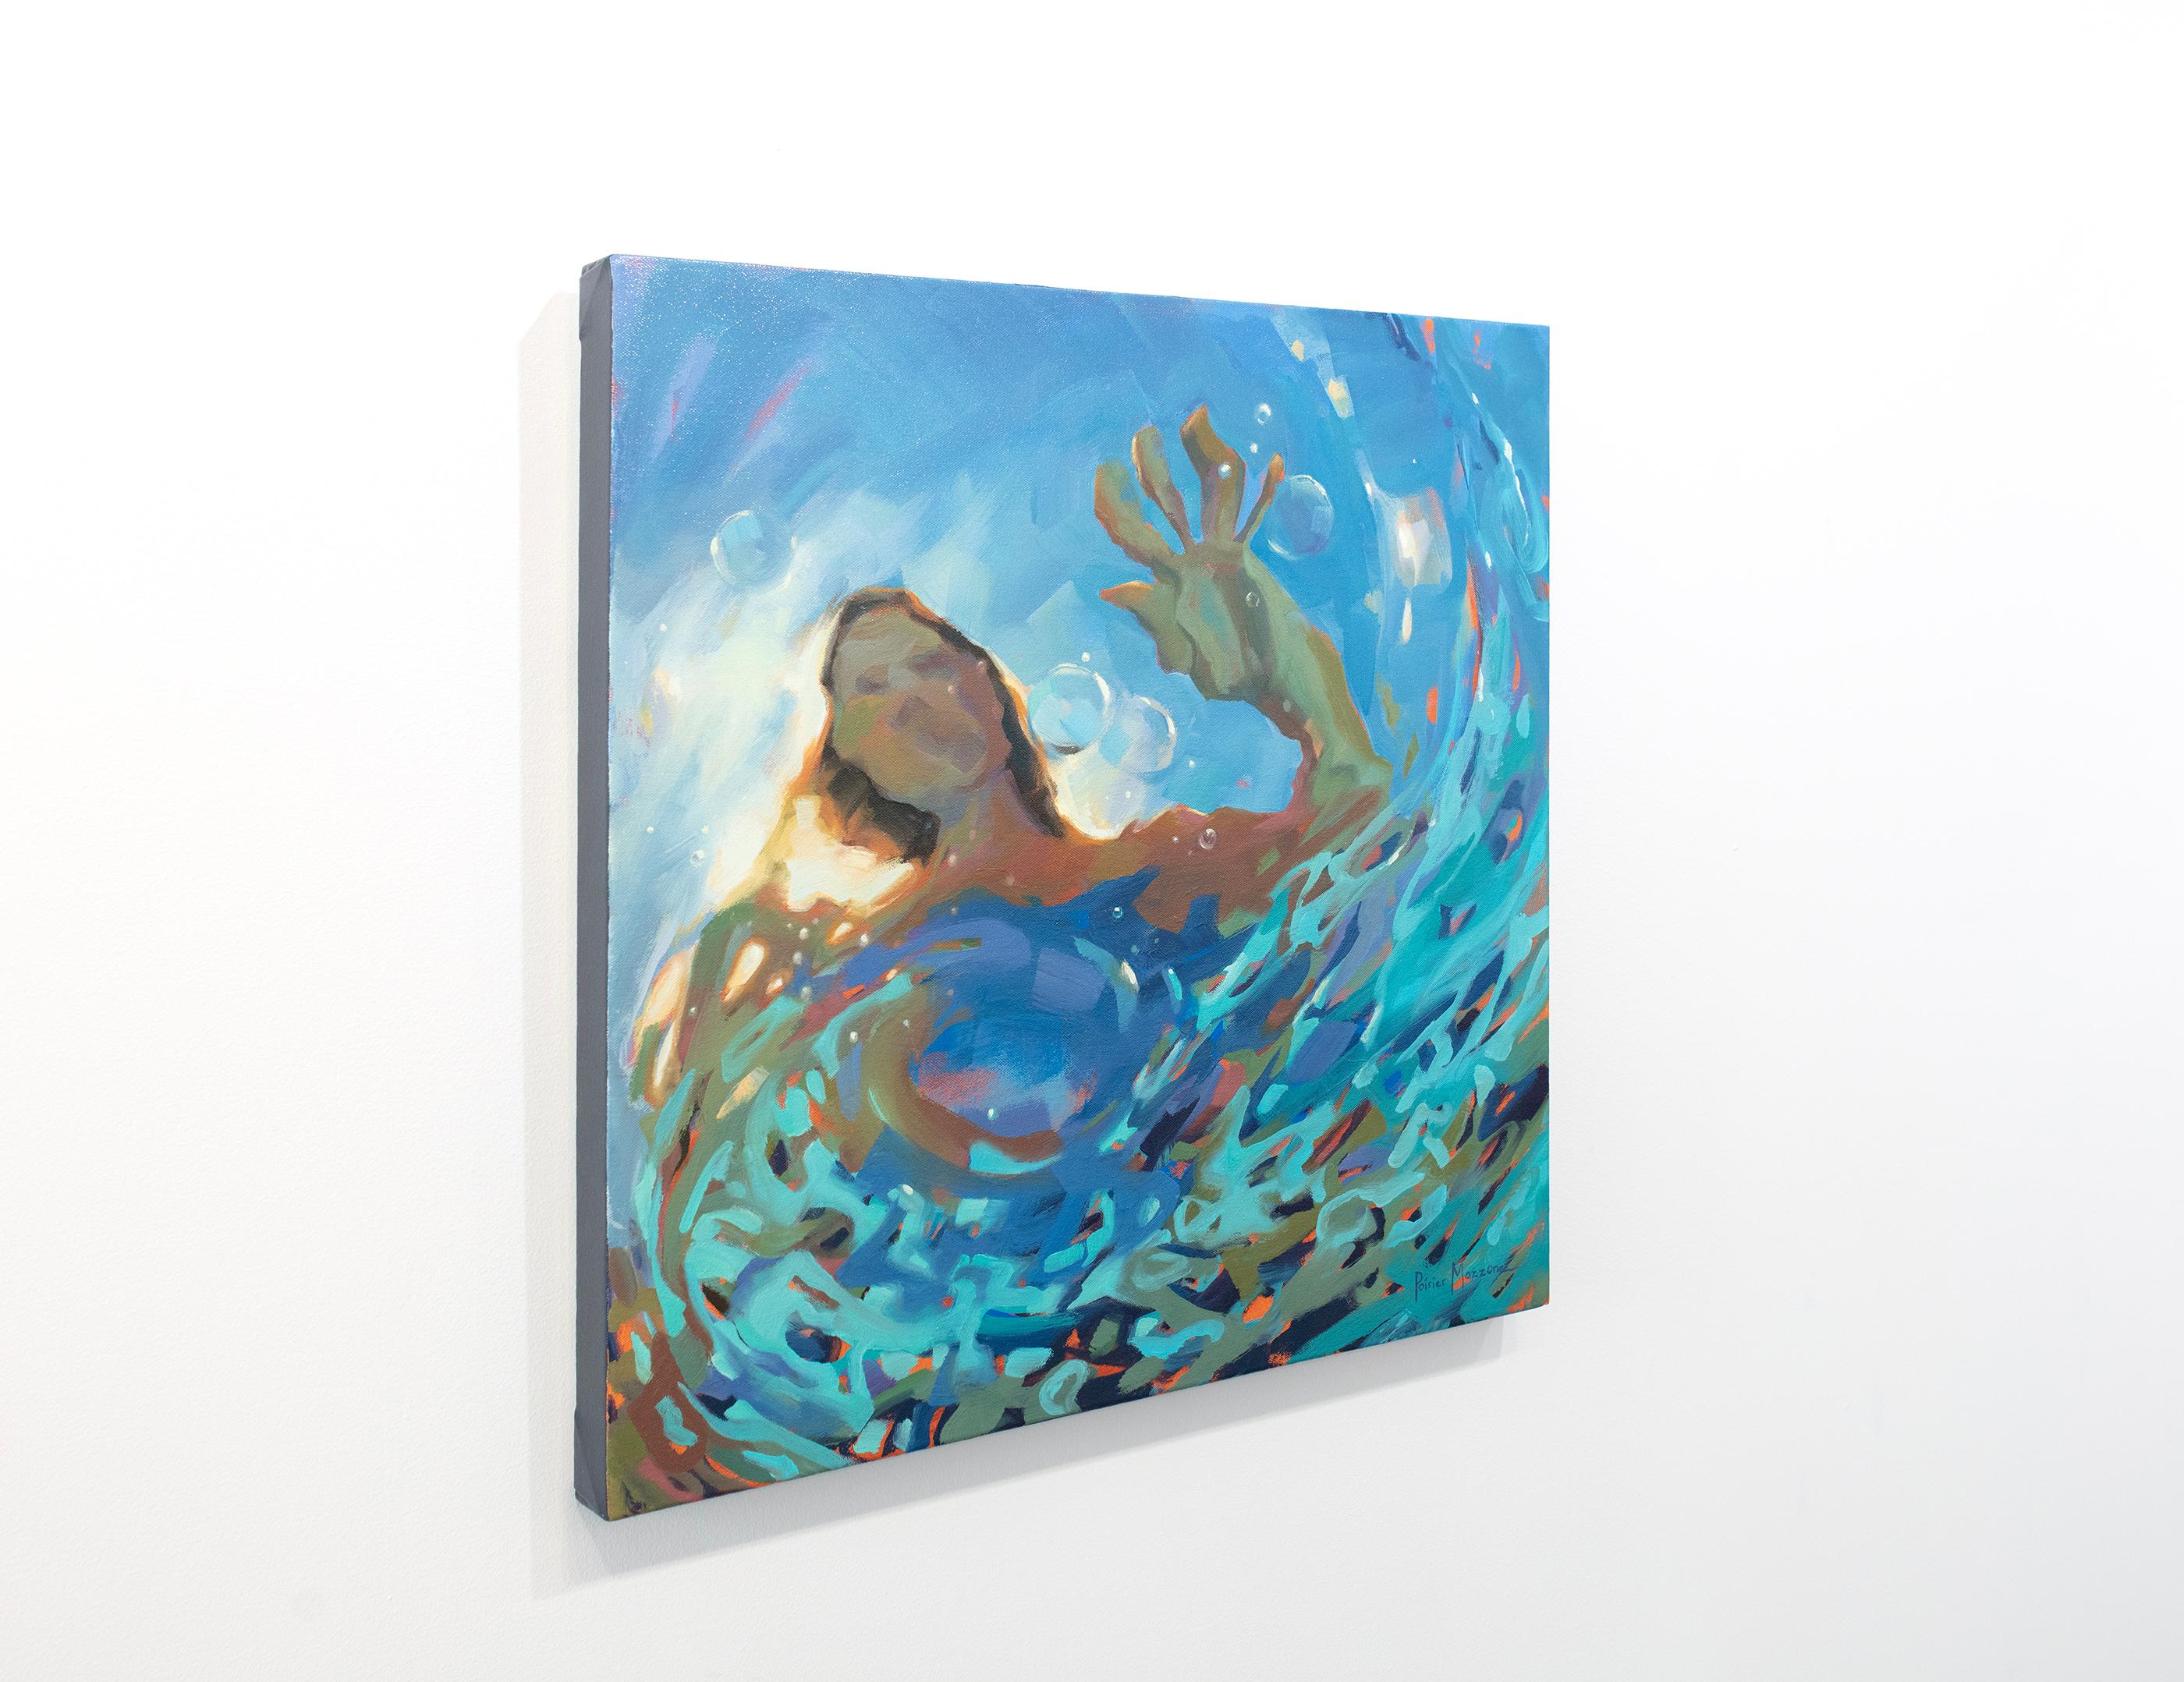 Cette peinture abstraite de Michele Poirier-Mozzone présente une palette de bleus vifs. L'artiste capture une vue d'un personnage depuis un point de vue situé sous la surface de l'eau dans laquelle il se trouve, en mettant l'accent sur la manière